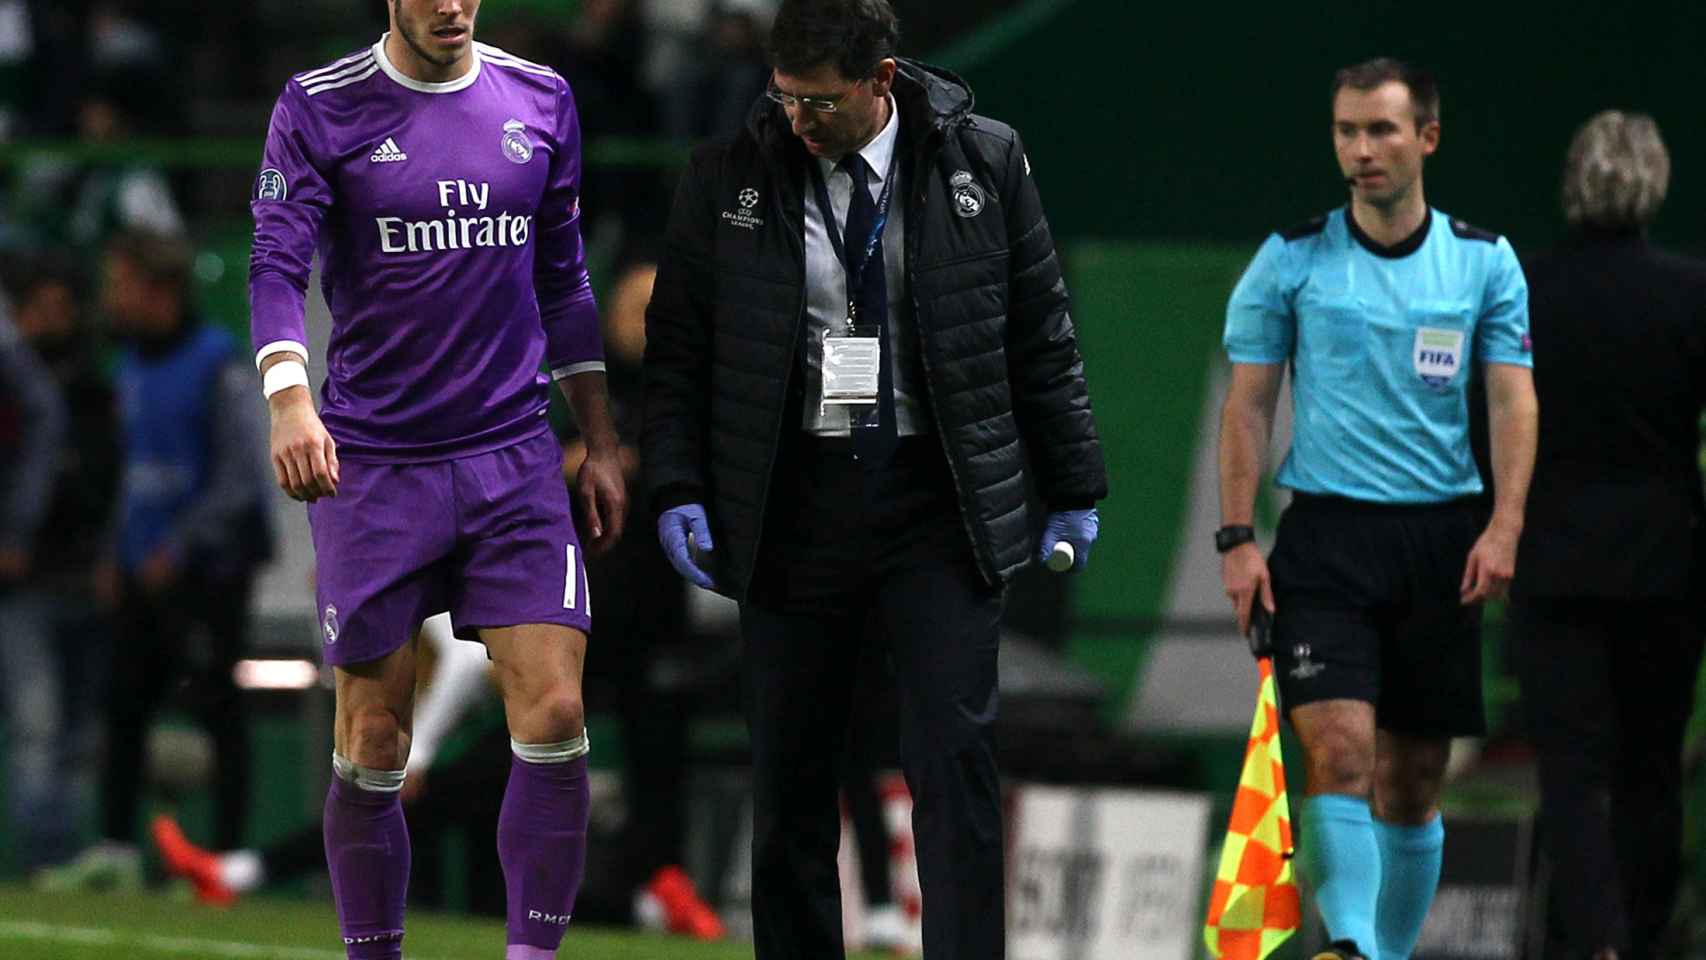 Bale se marcha lesionado tras el partido contra el Sporting.